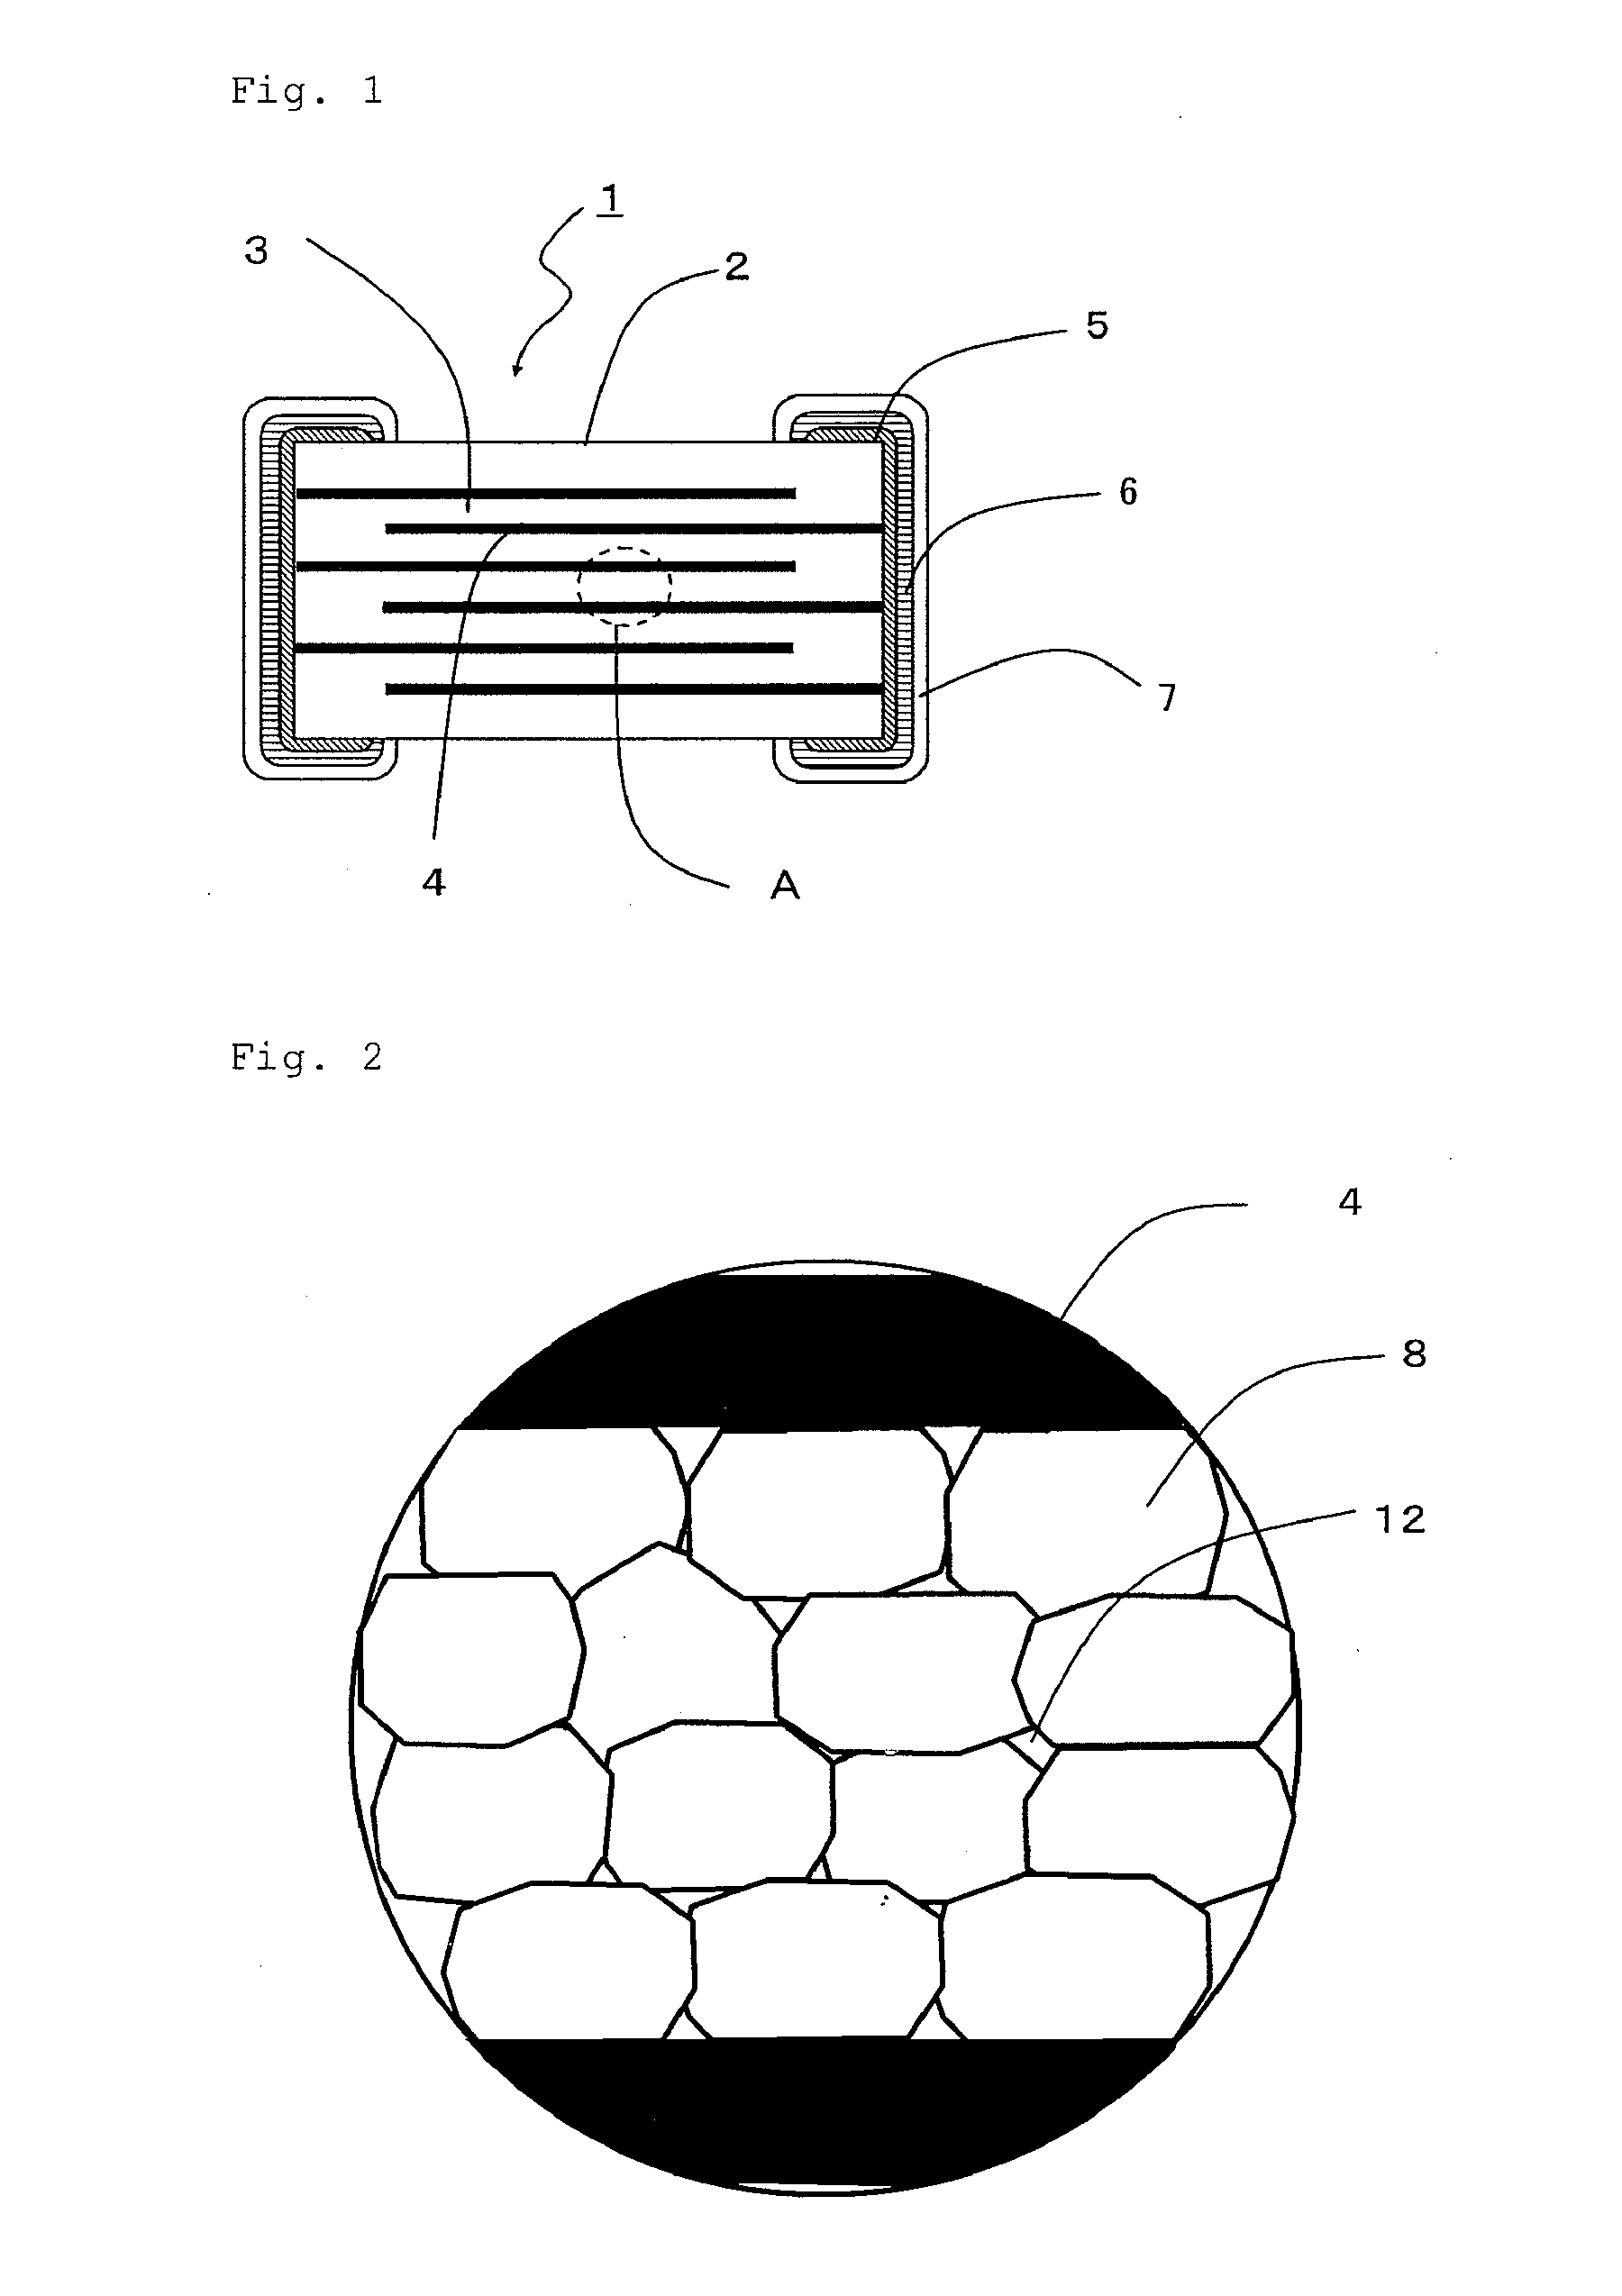 Multi-layer ceramic capacitor